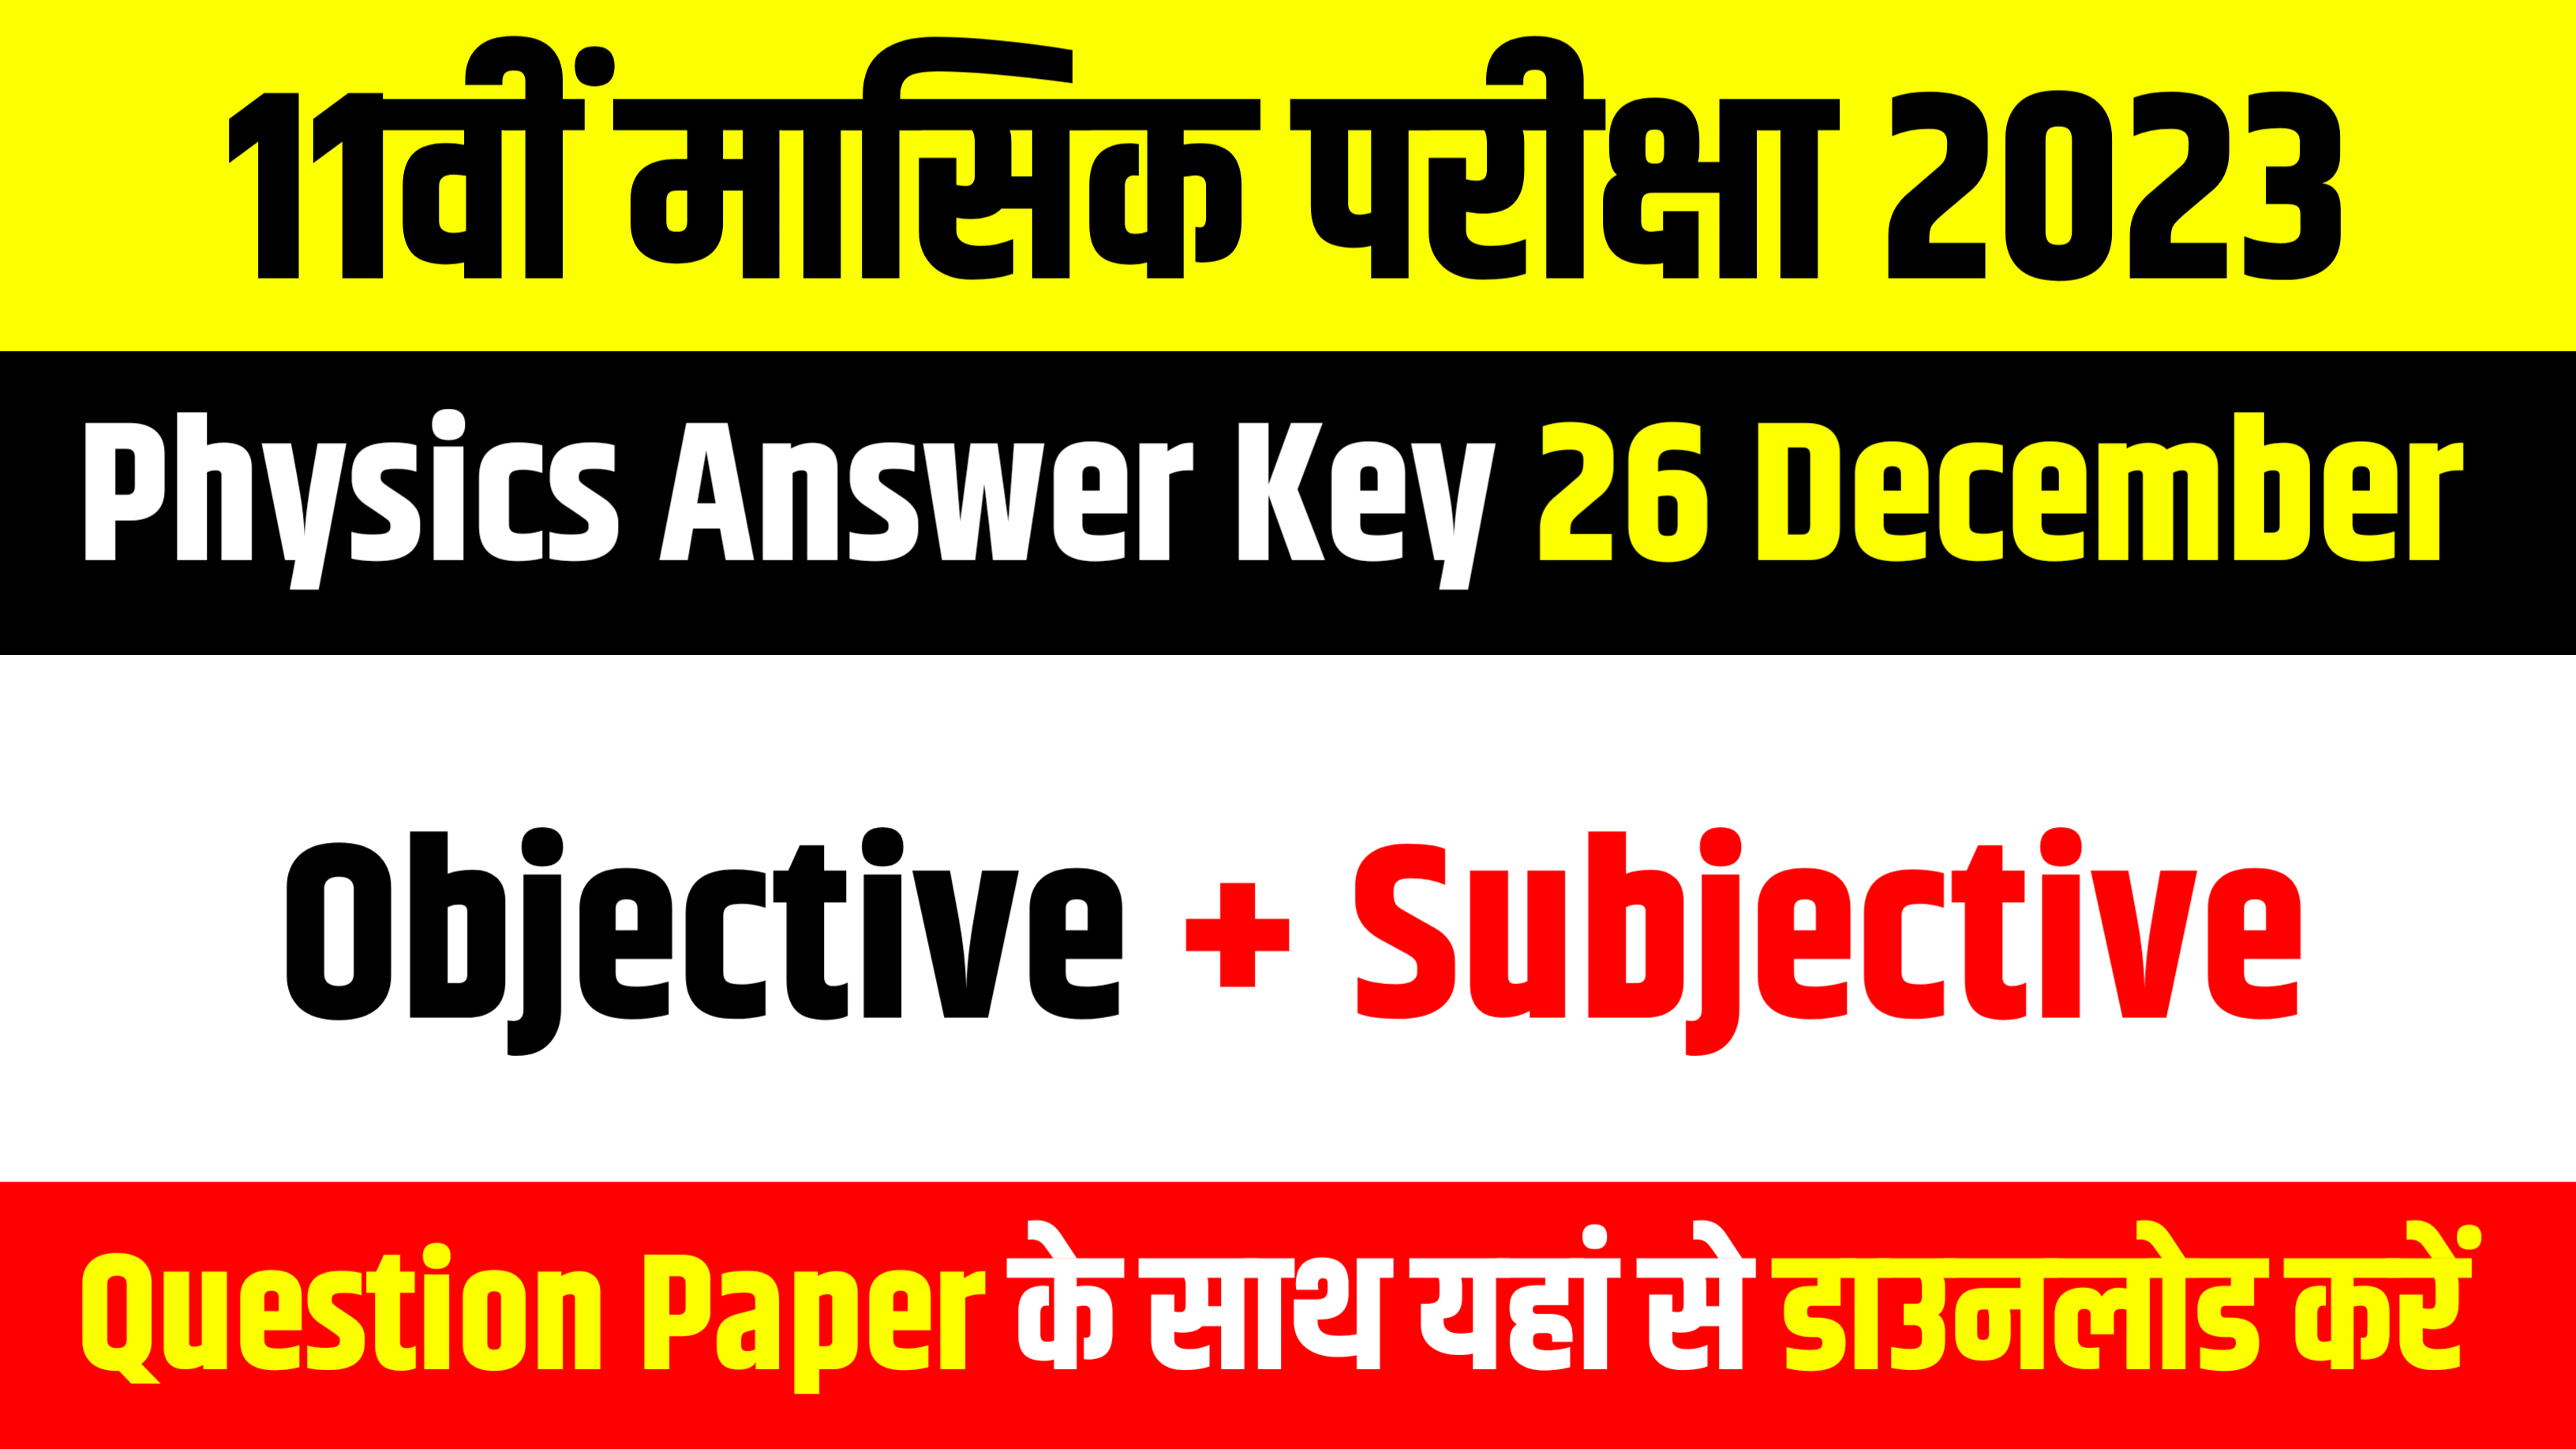 Bihar Board 11th Physics Answer Key 2023: